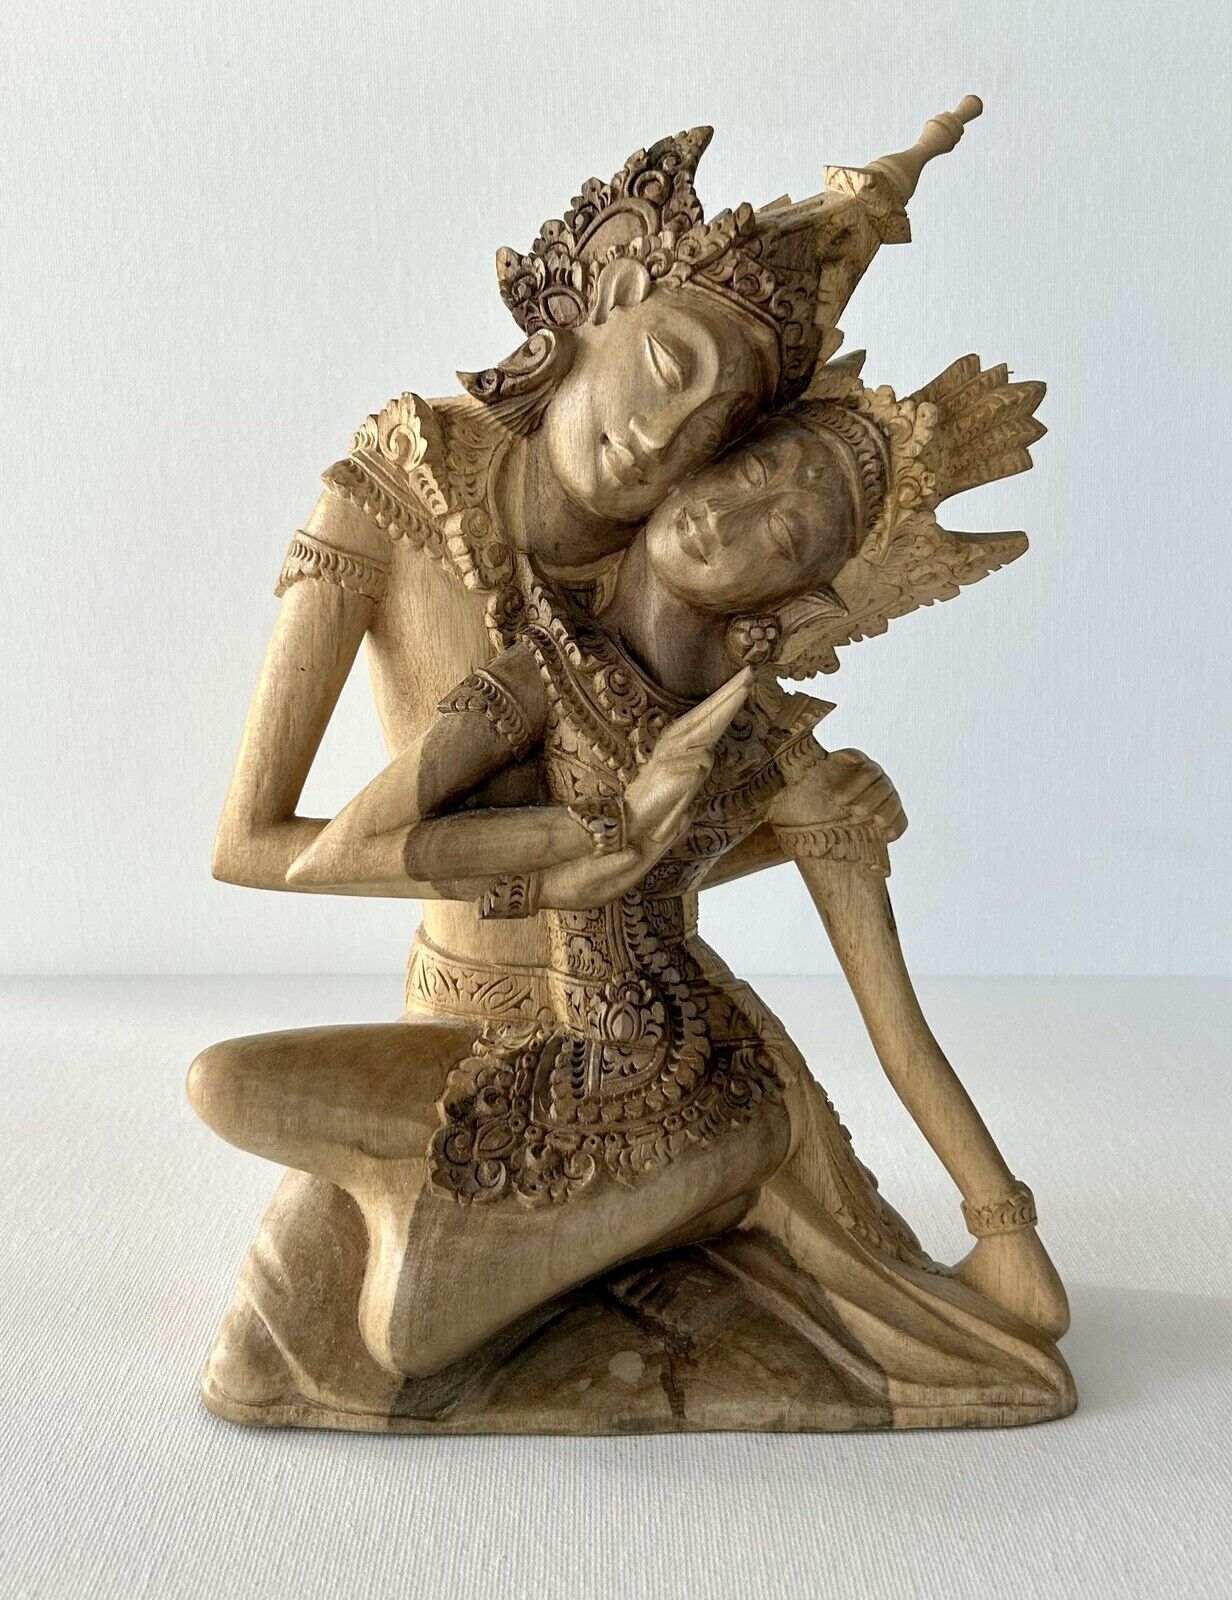 Balinese Bali Wood Carving Of Hindu Folklore Rama & Sita 9”H